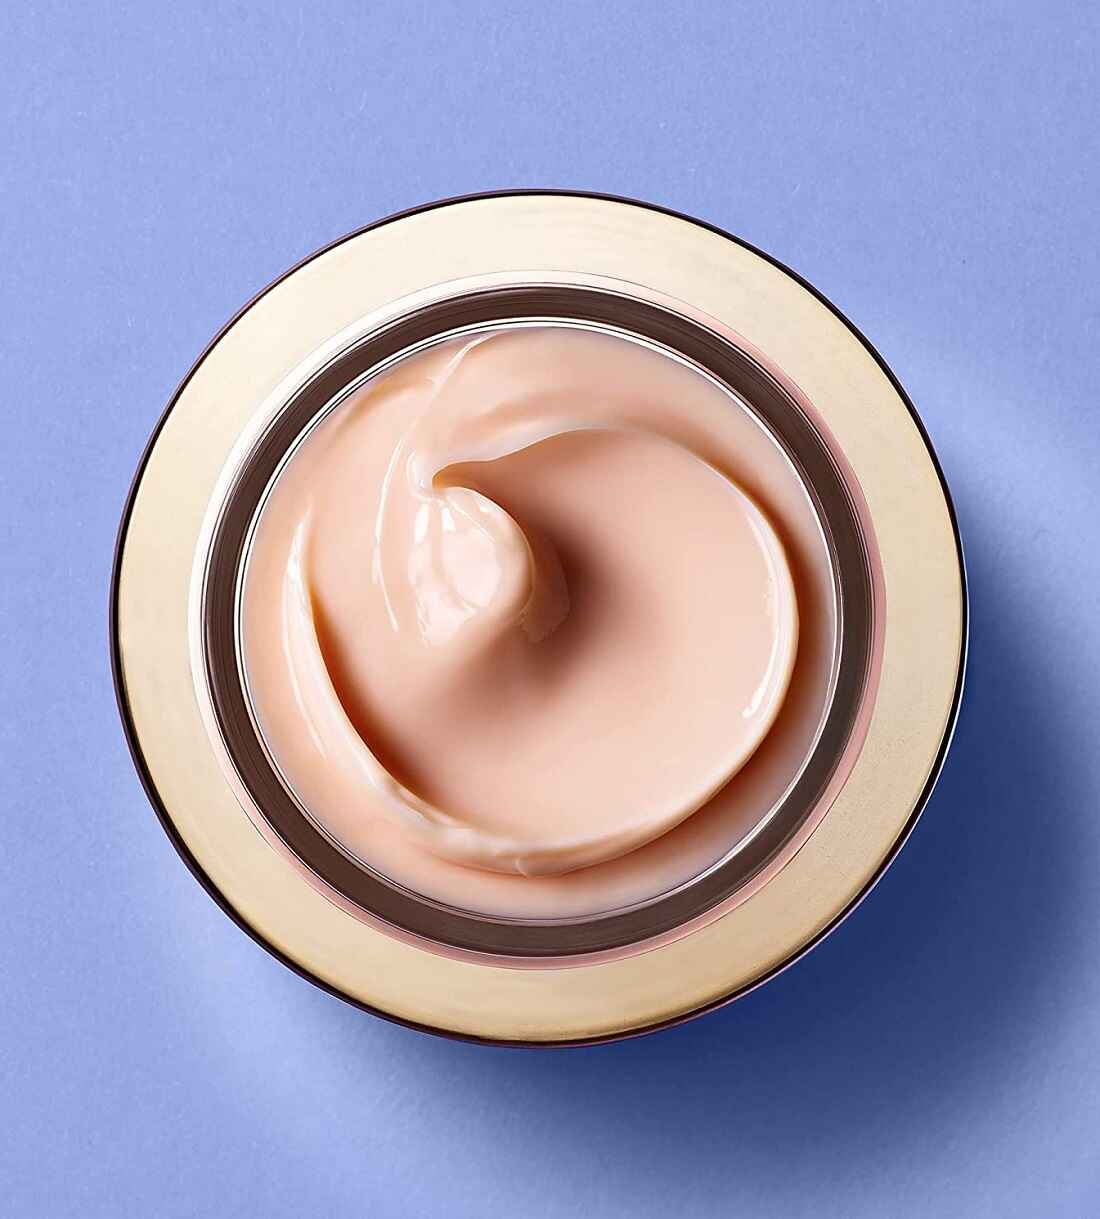 کرم ضدپیری و لیفت کننده پوست خشک Shiseido مدل پرفکشن